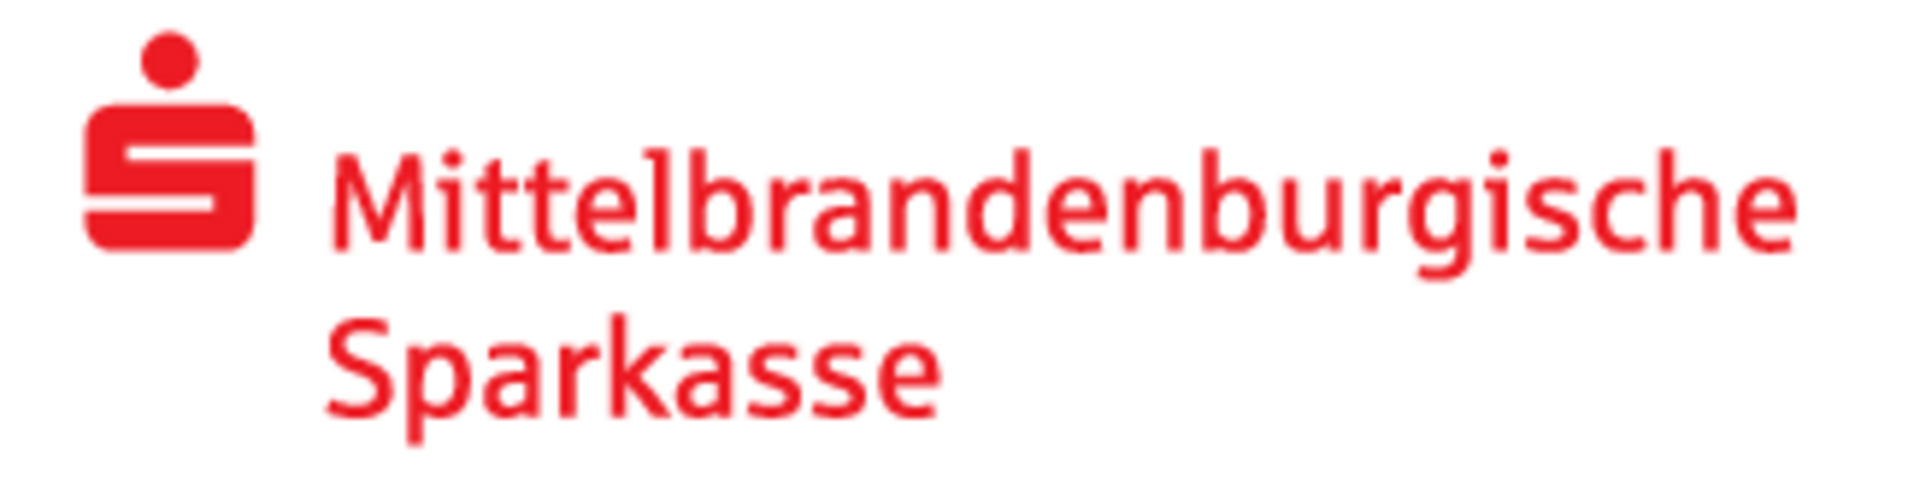 Logo der Mittelbrandenburgischen Sparkasse